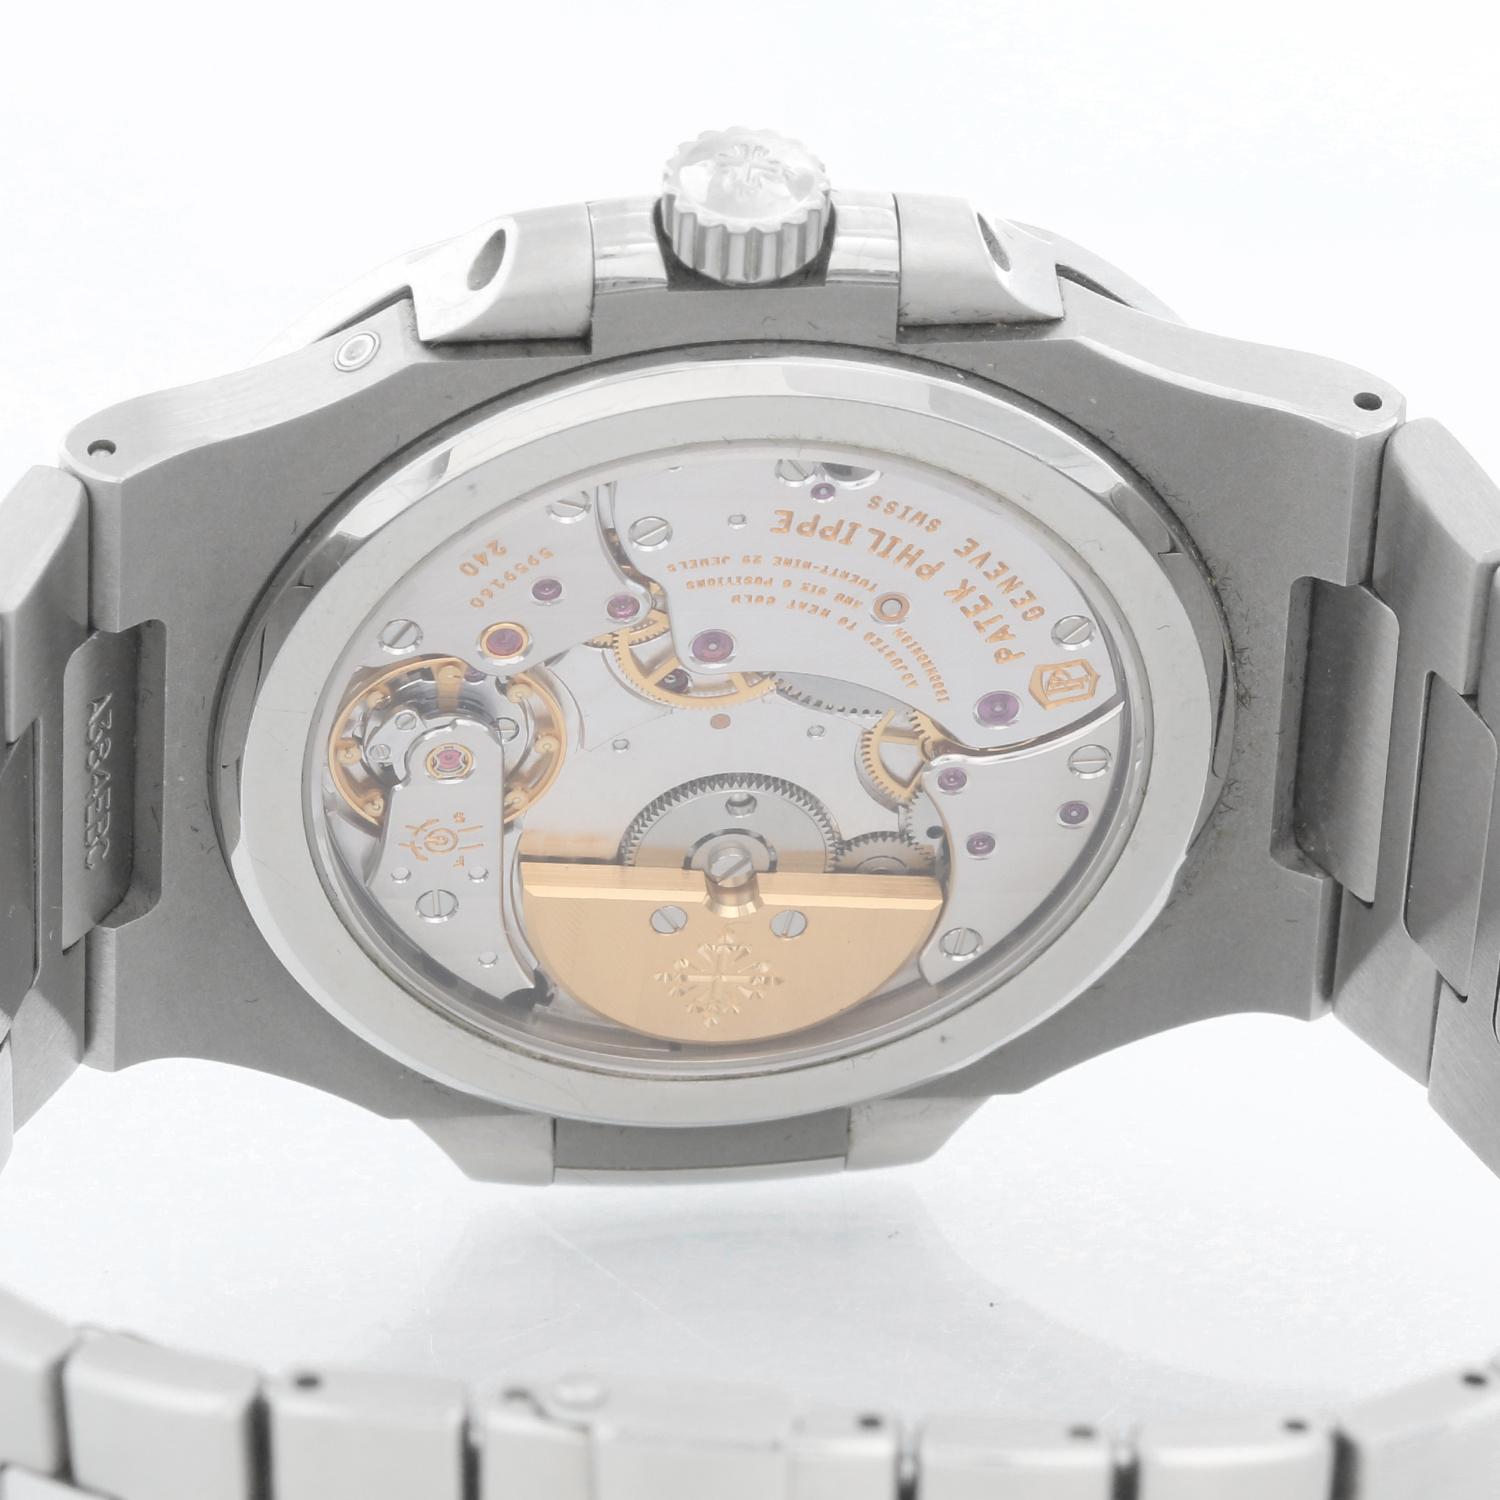 Patek Philippe & Co. Nautilus Men's Watch 5712 G-001 1